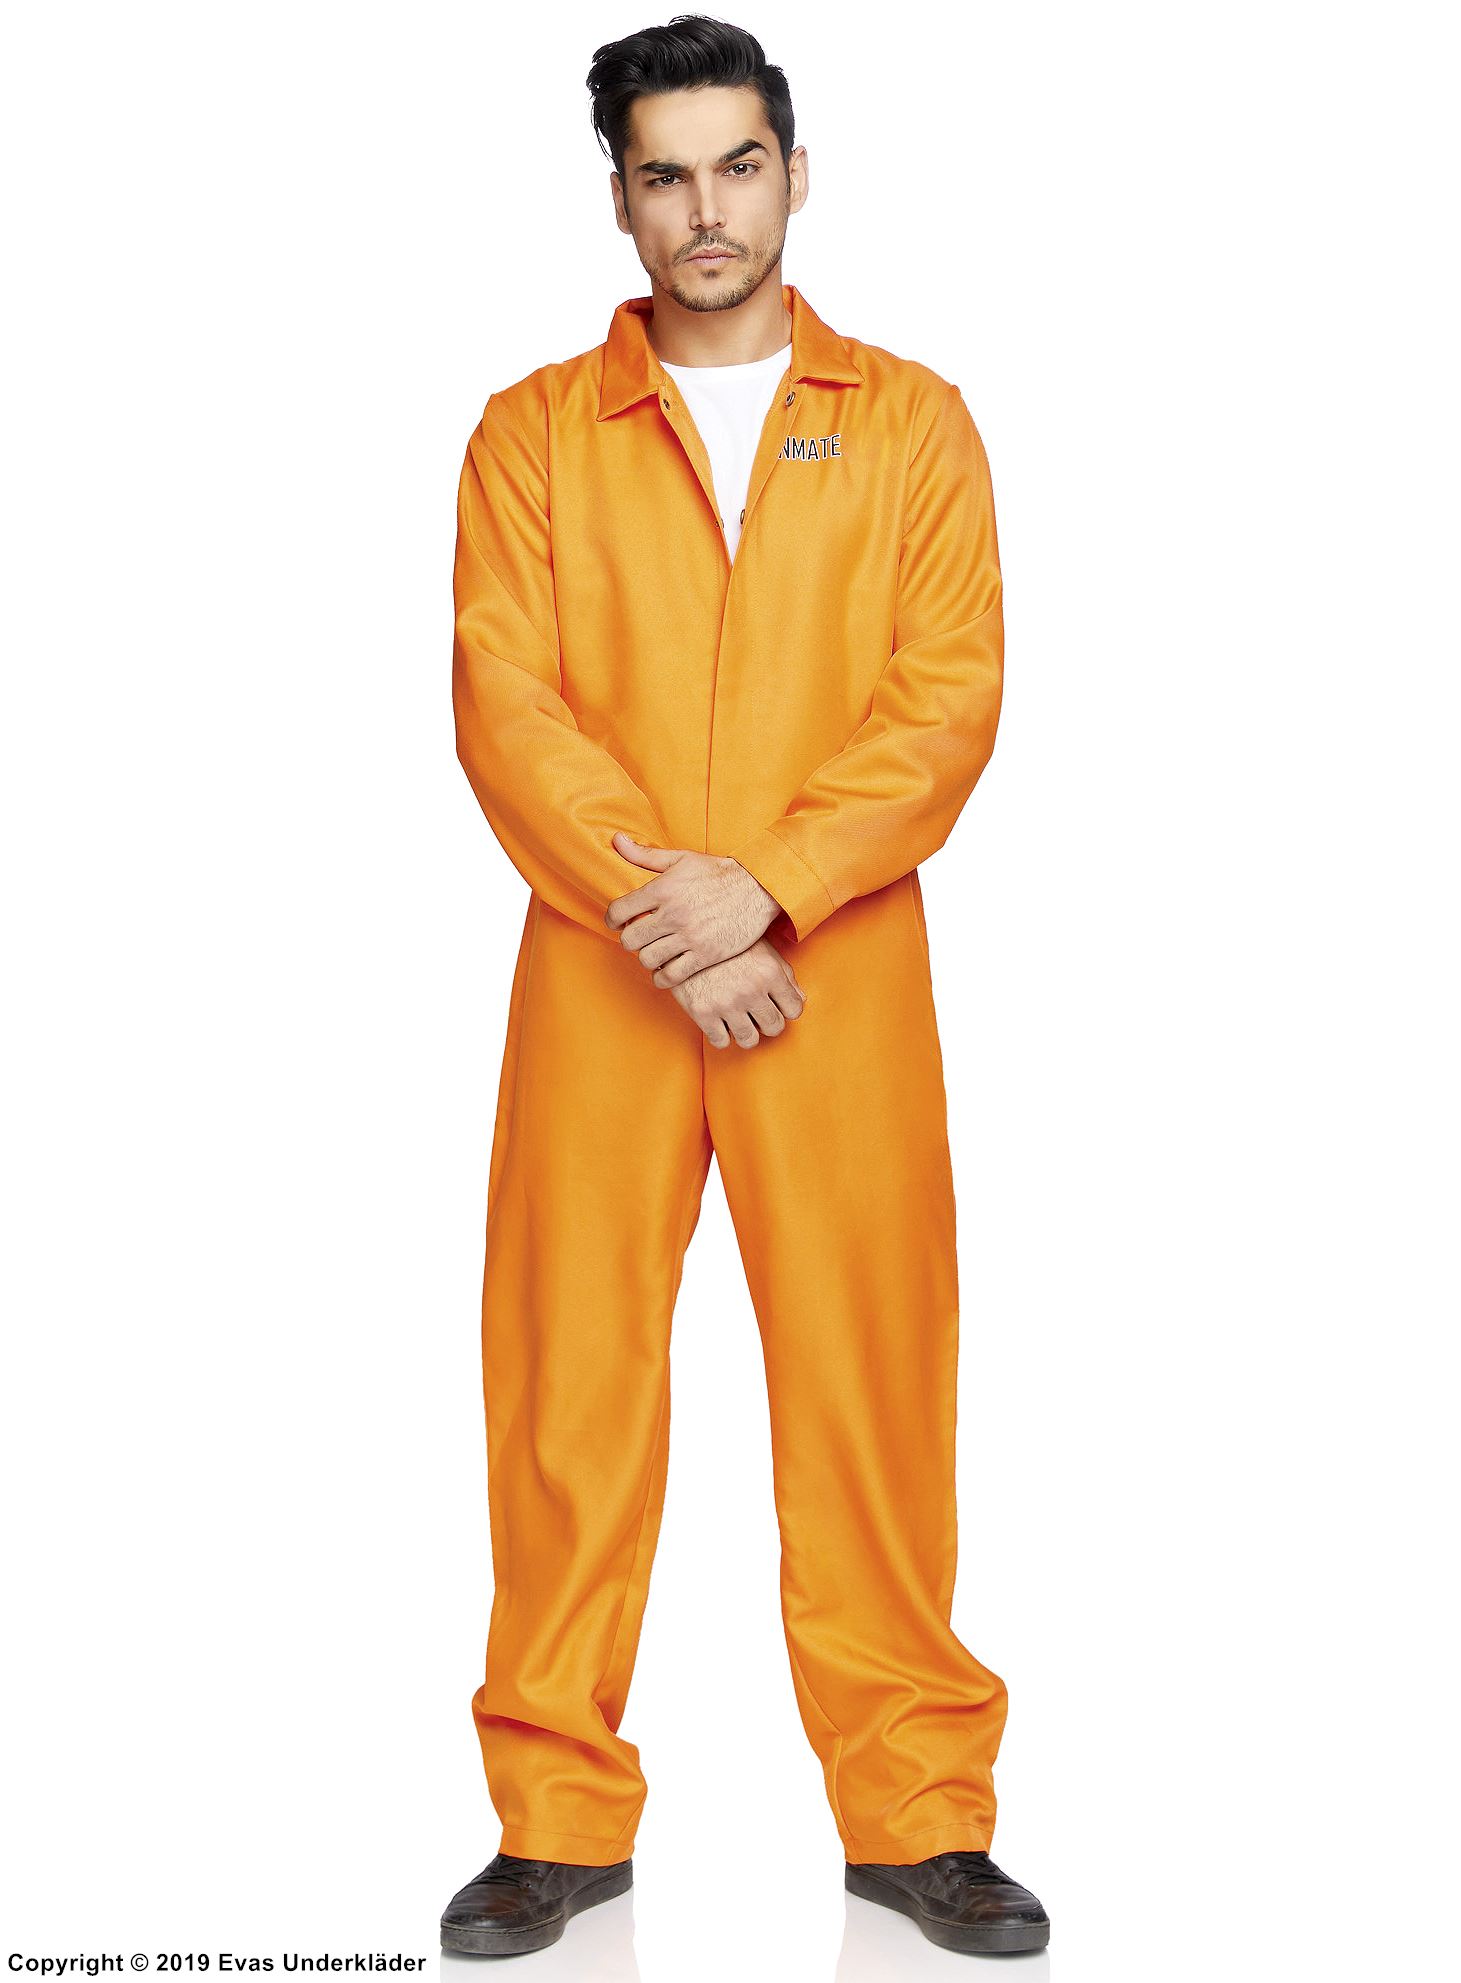 Prisoner, costume jumpsuit